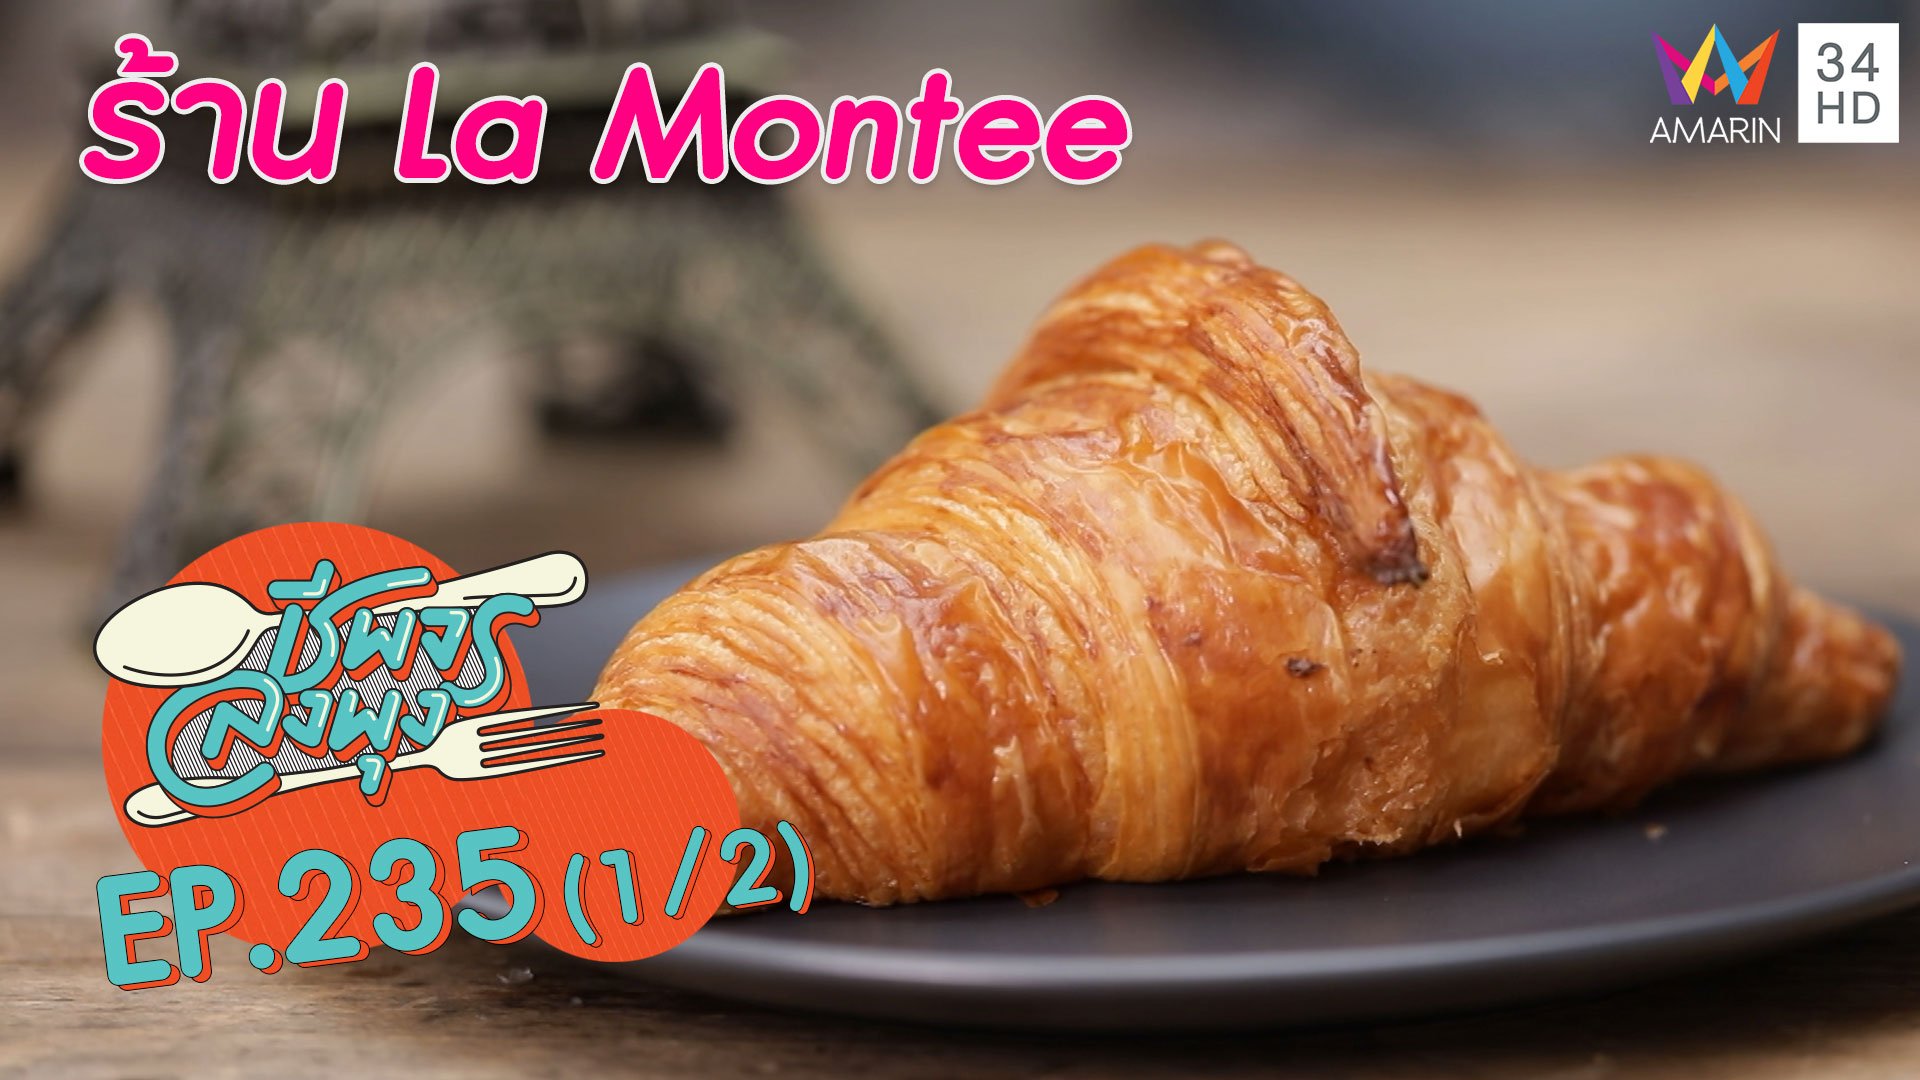 ขนมฝรั่งเศสสไตล์เกาหลี @"ร้านLa Montee" | ชีพจรลงพุง | 6 ก.ย. 63 (1/2) | AMARIN TVHD34